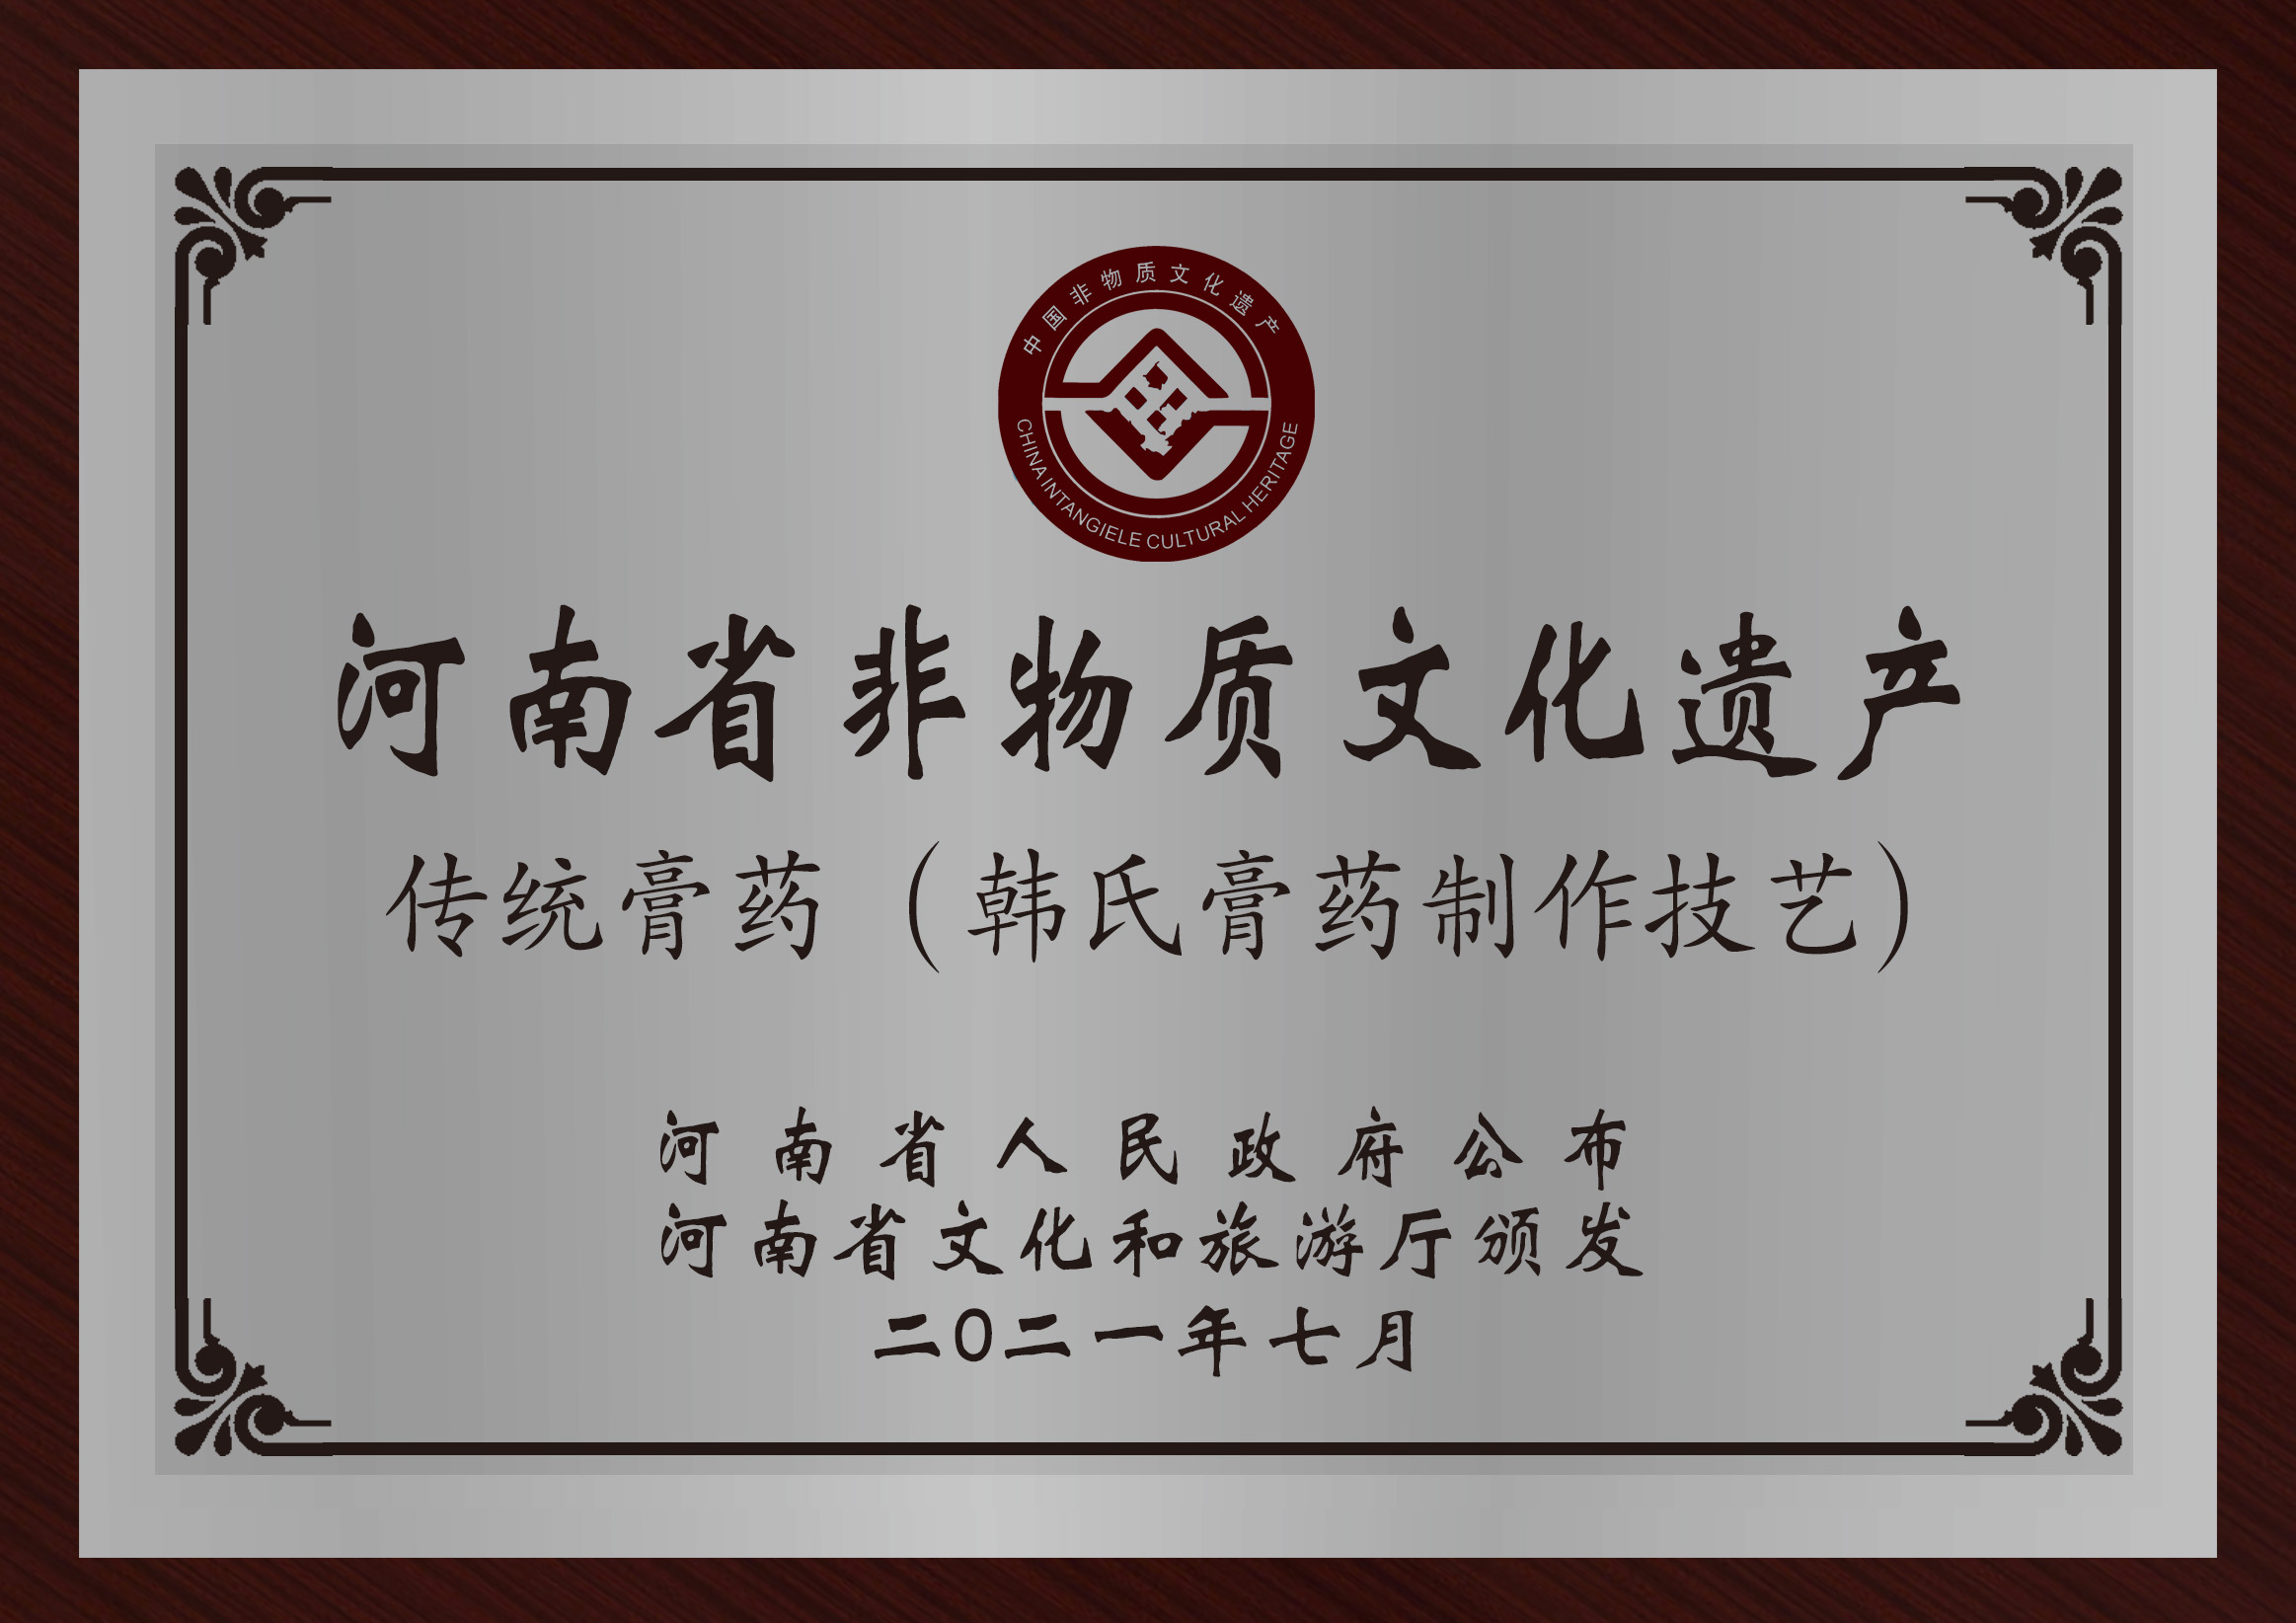 韩氏膏药被认定为河南省非物质文化遗产